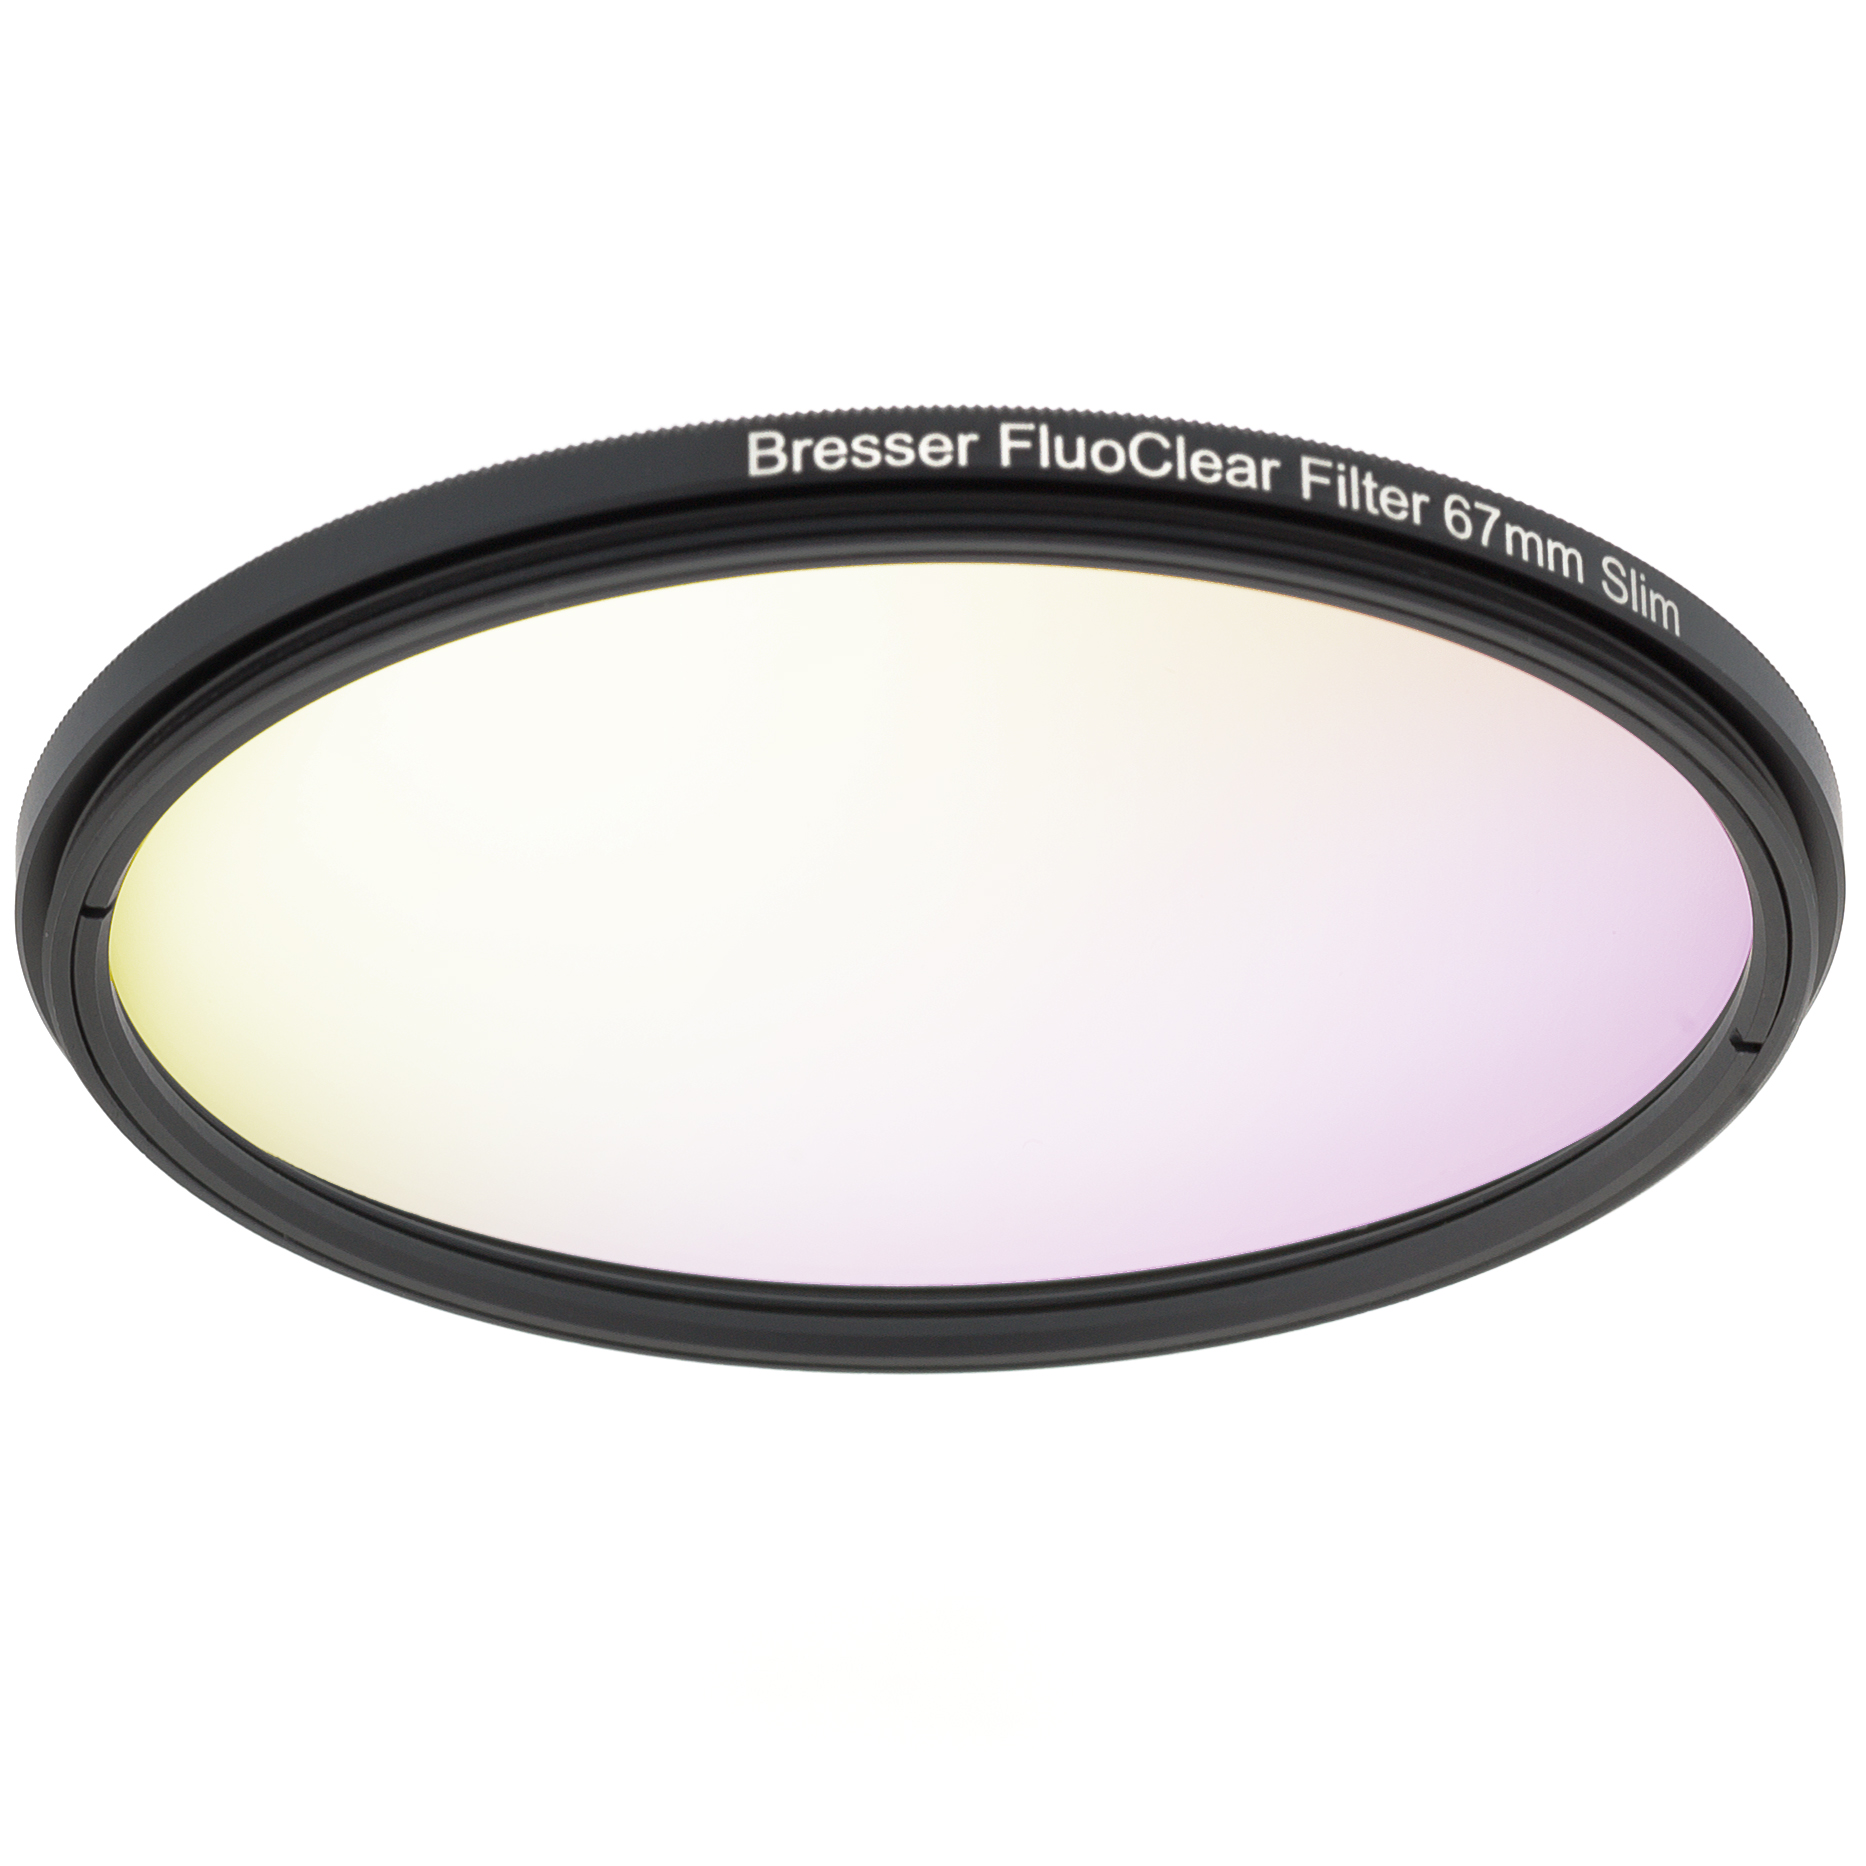 Filtro para fluorescencia BRESSER FluoClear 67 mm Slim